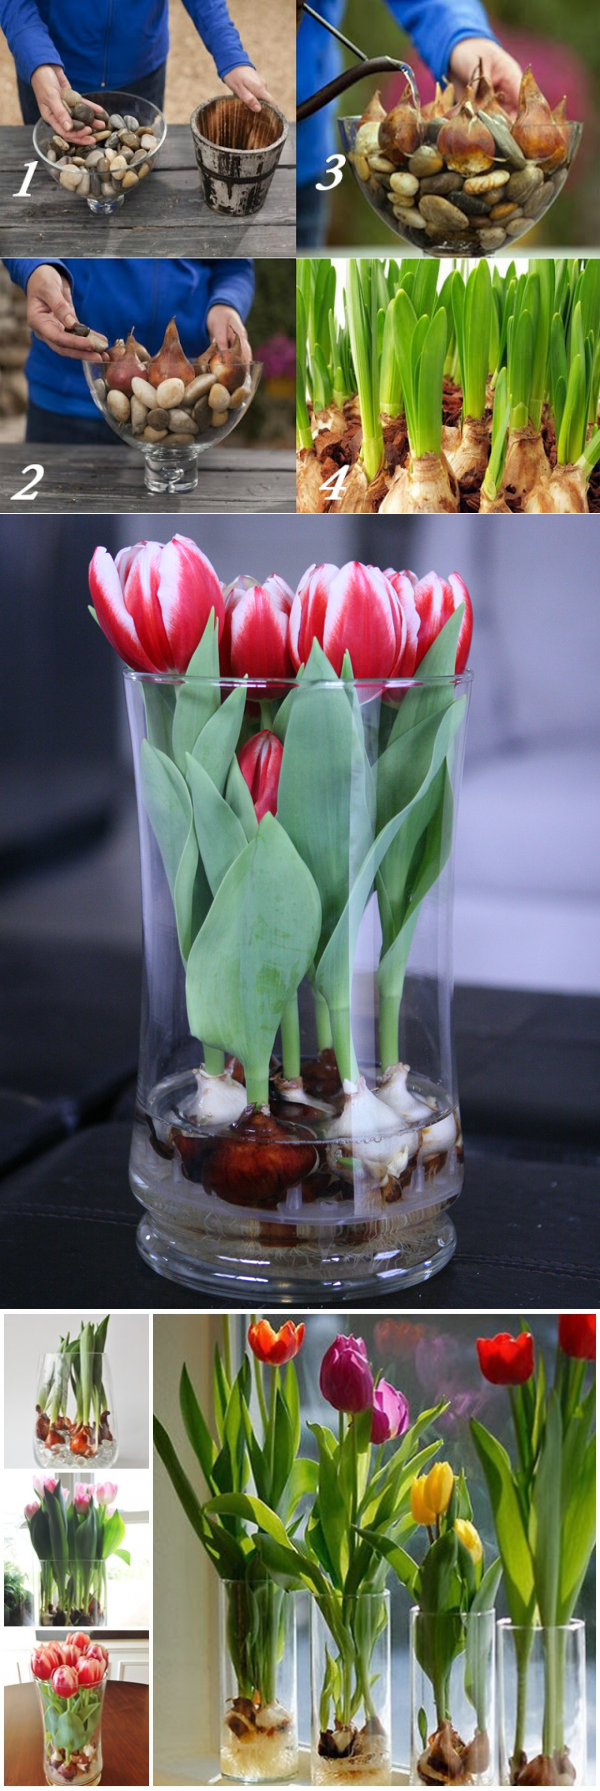 Выращивание тюльпанов в домашних условиях на продажу. Выгонка тюльпанов к 8. Тюльпаны вырастить в квартире.